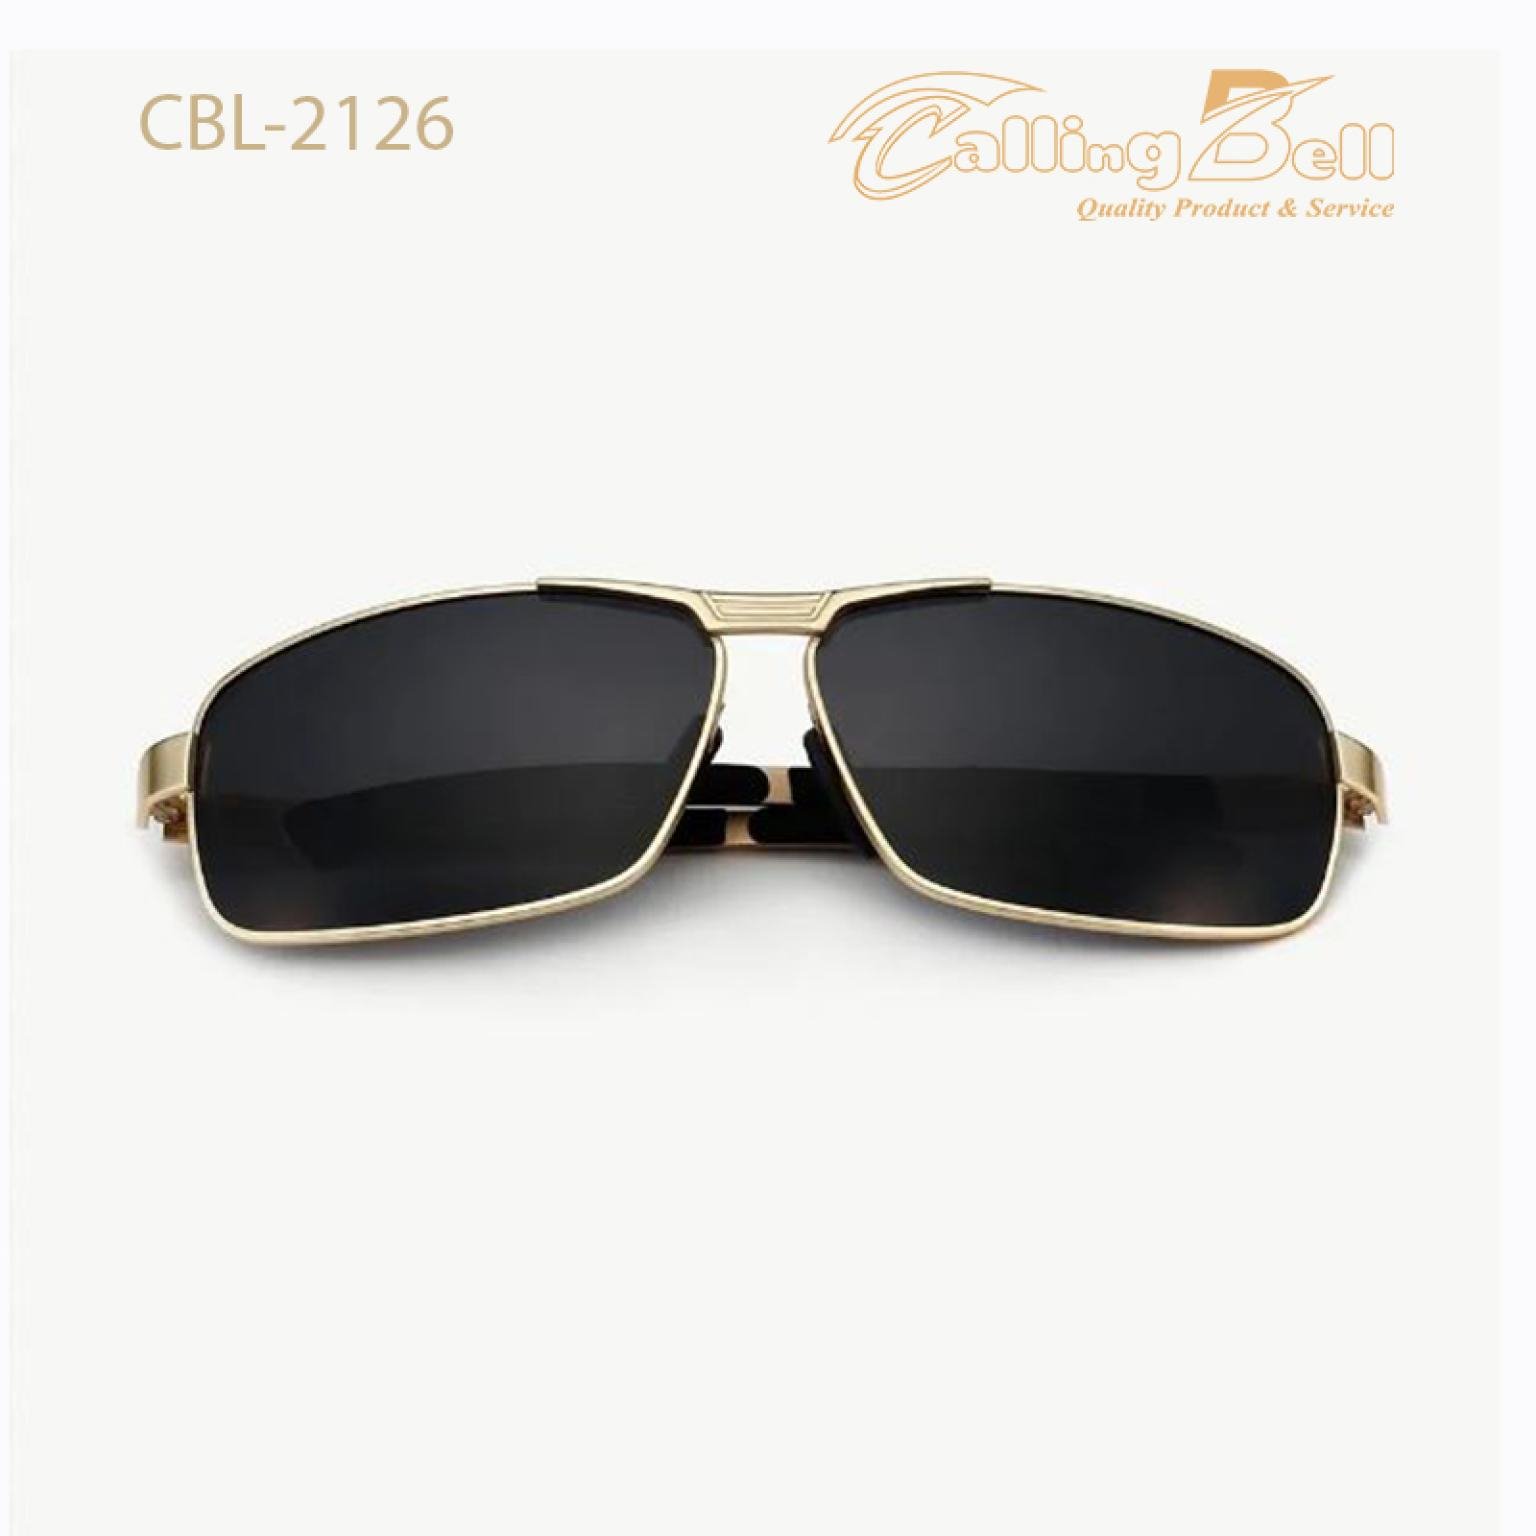 HD Polarized Sunglasses For Men Women Brand Designer Driving Fashion UV400 Lens Eyewear Male Glasses Unisex Vintage